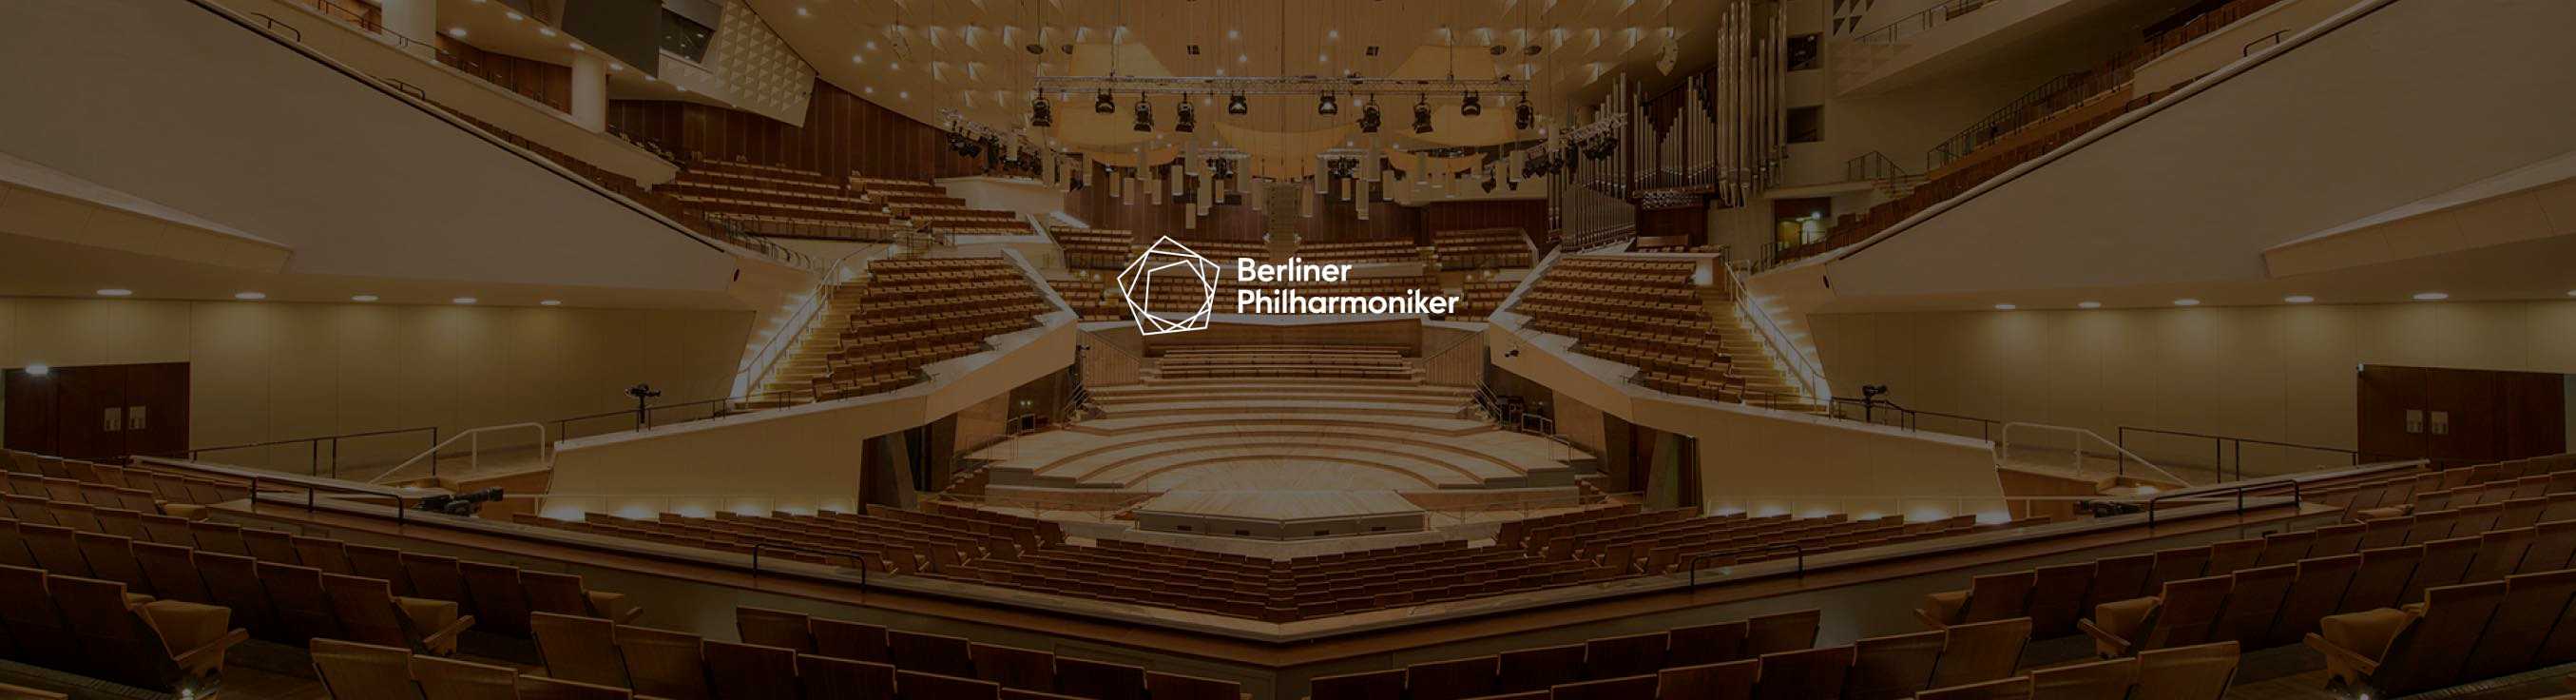 Berliner Philharmoniker at Kammermusiksaal